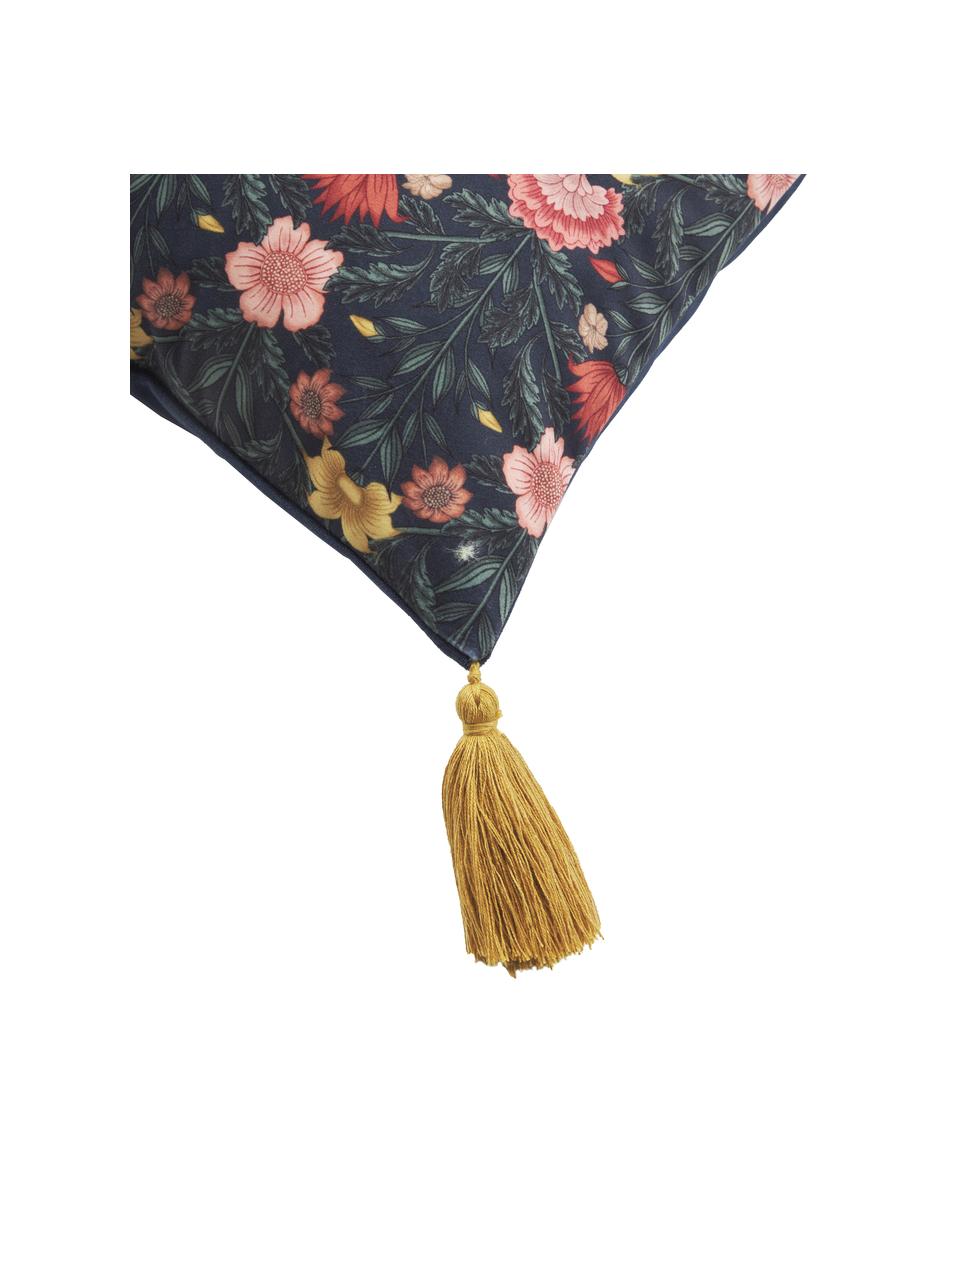 Fluwelen kussenhoes Pari met bloemenpatroon en kwastjes, Kwastjes: 100 % katoen, Donkerblauw,geel,rood, B 45 x L 45 cm